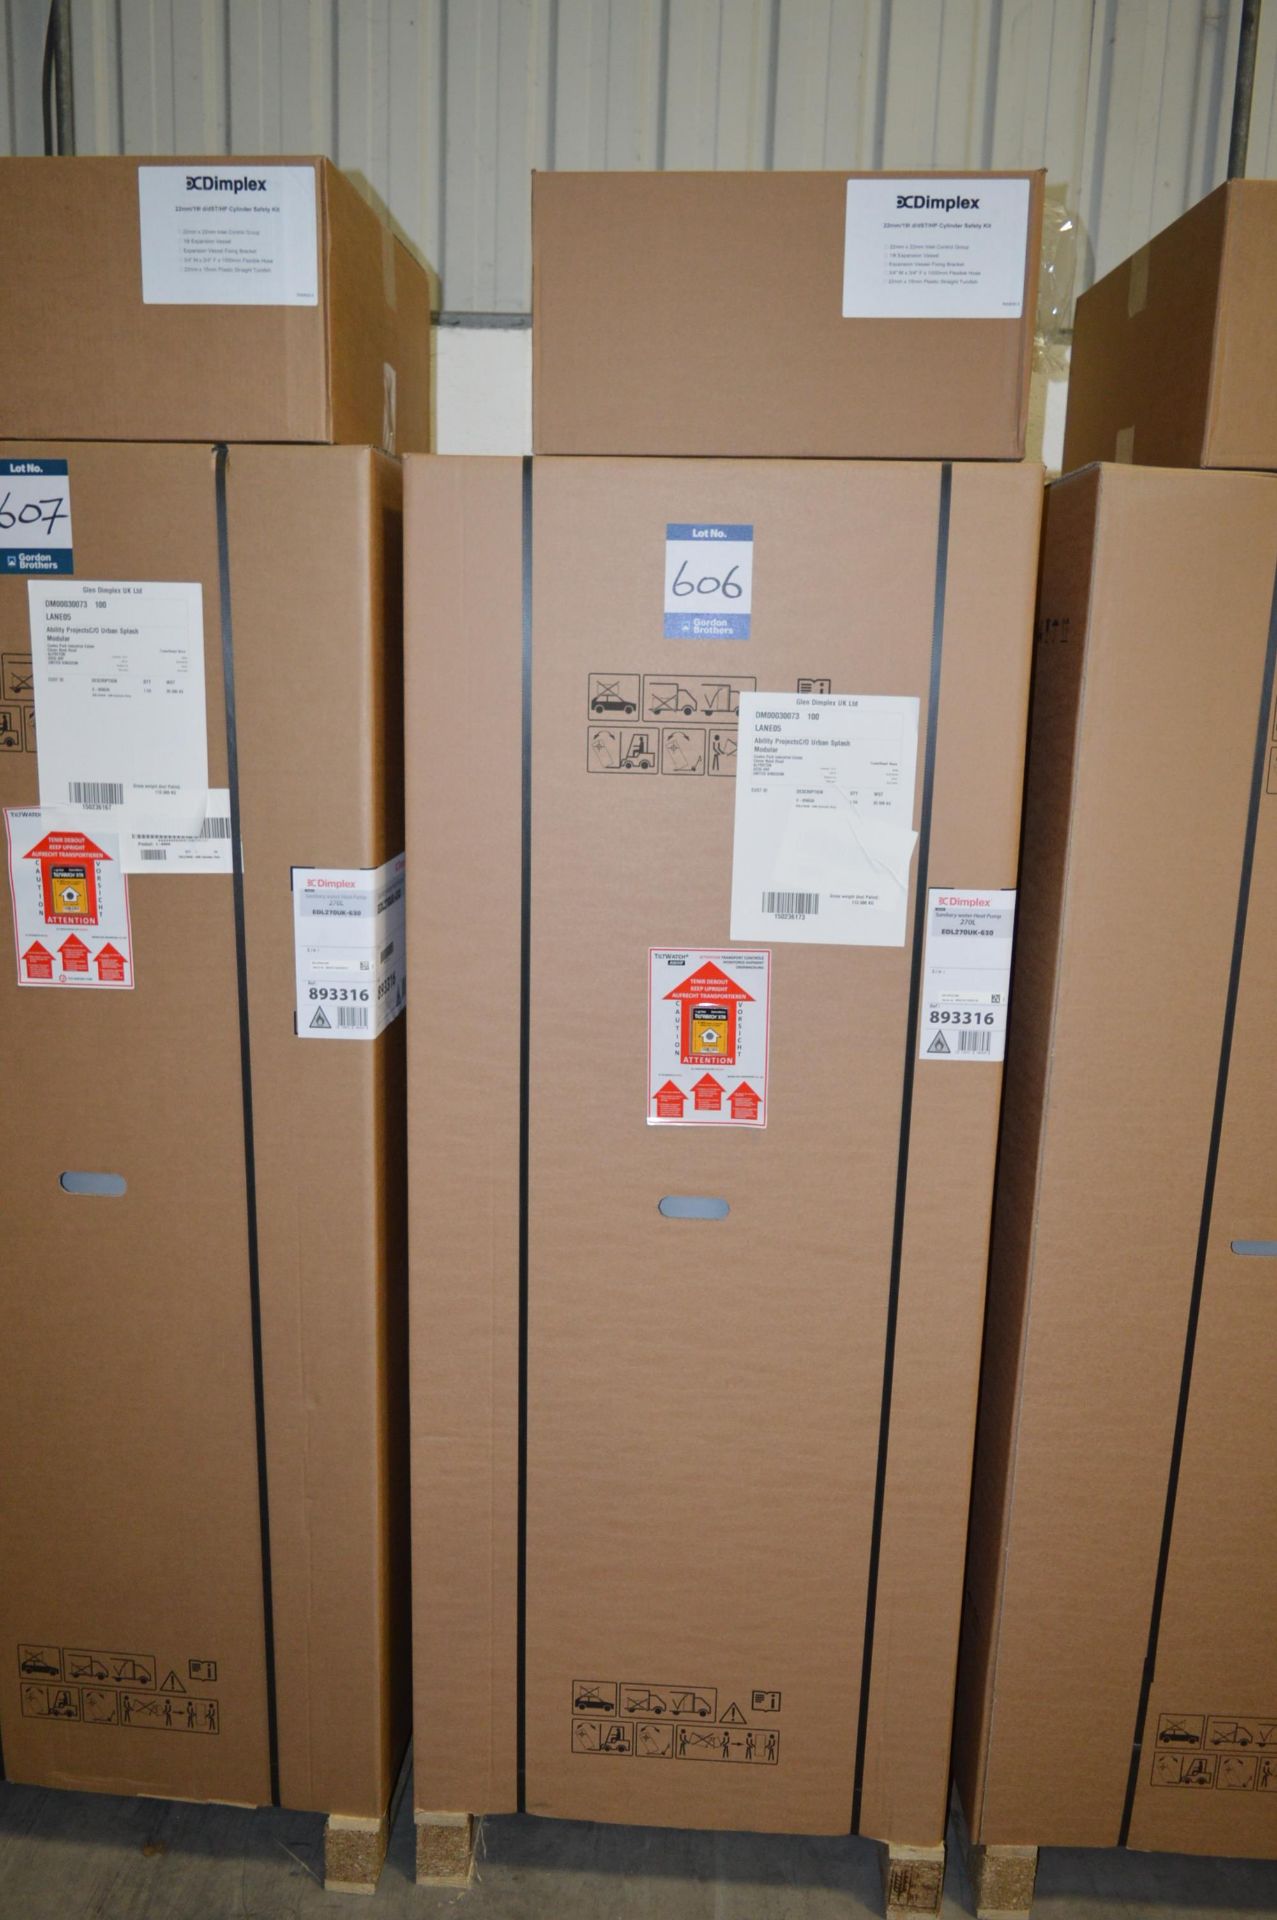 Dimplex, sanitary heat pump, Model EDL270UK-630, 270L, Serial No. 893316-215020134 (boxed)